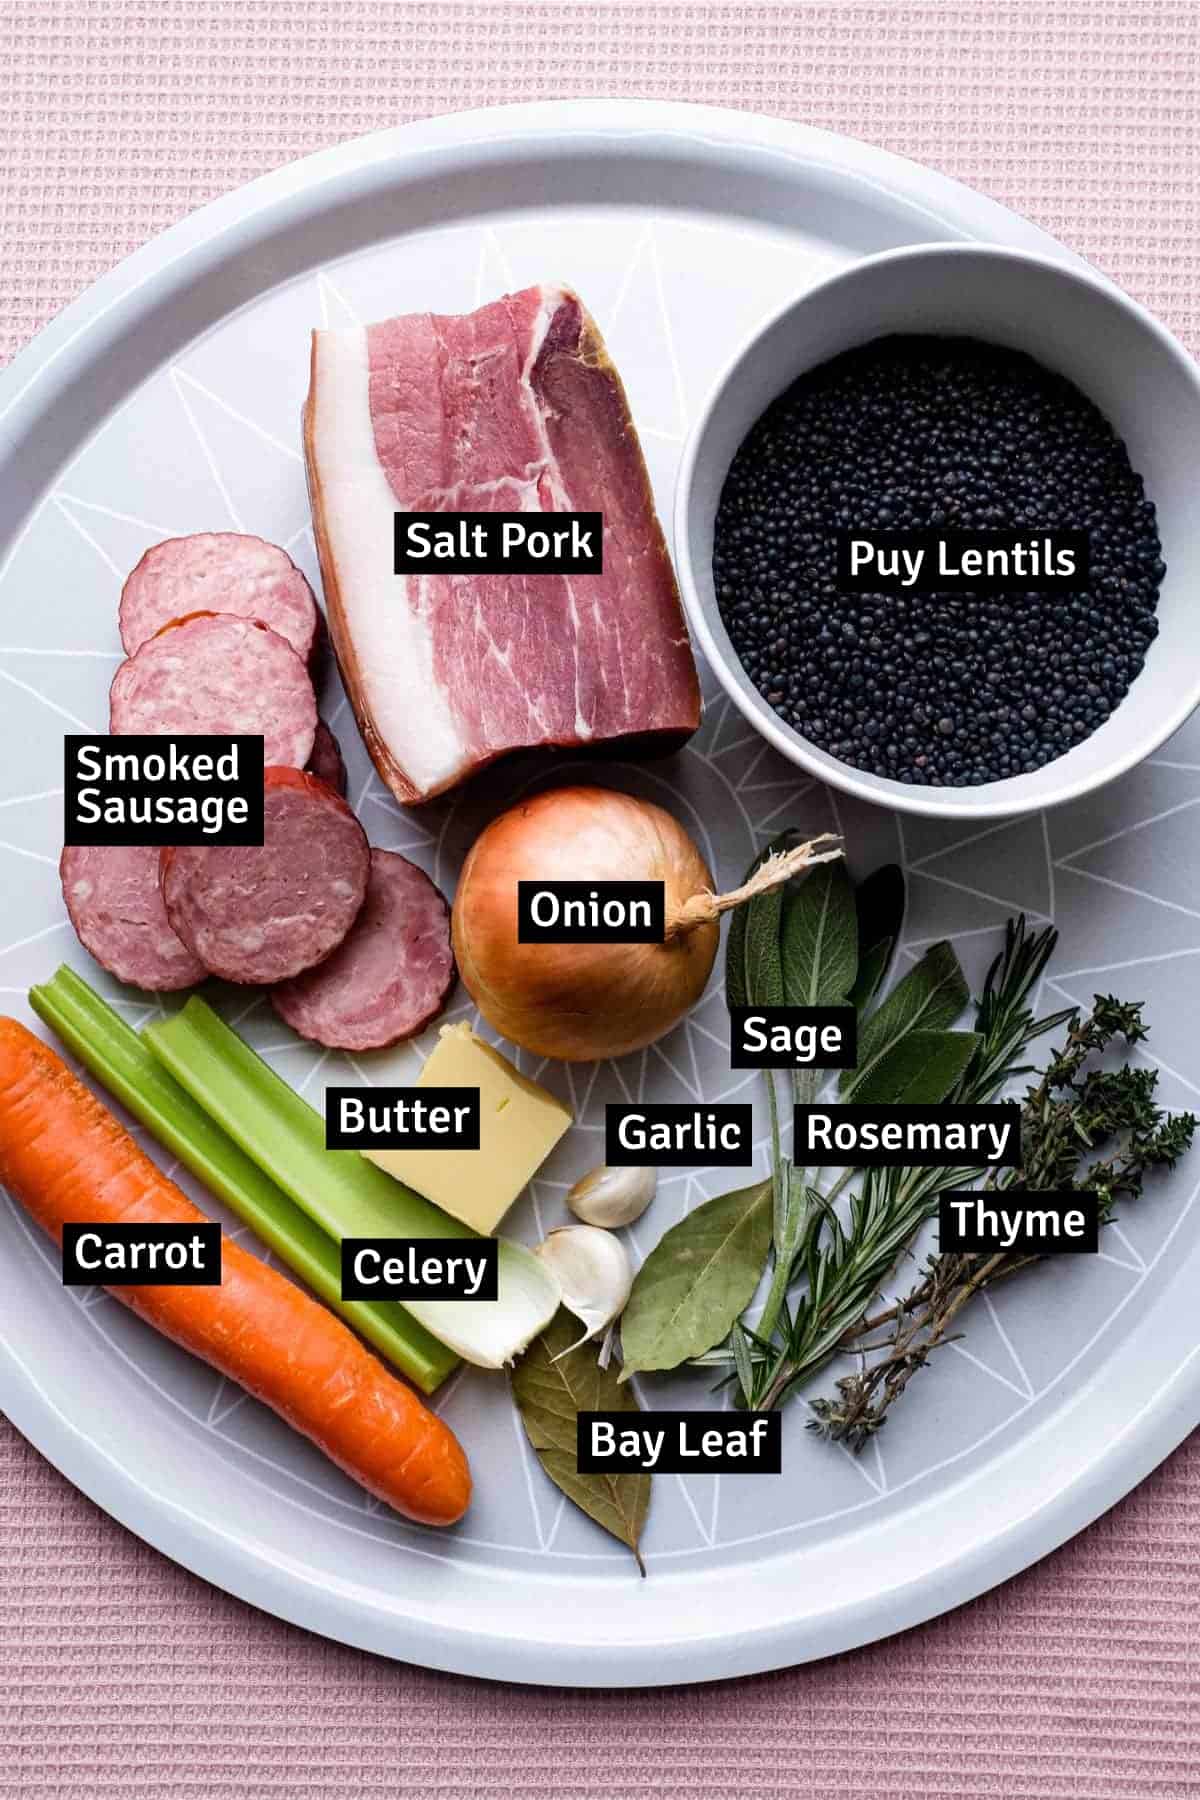 The ingredients for Salt Pork with Puy Lentils (Petit Sale aux Lentilles)